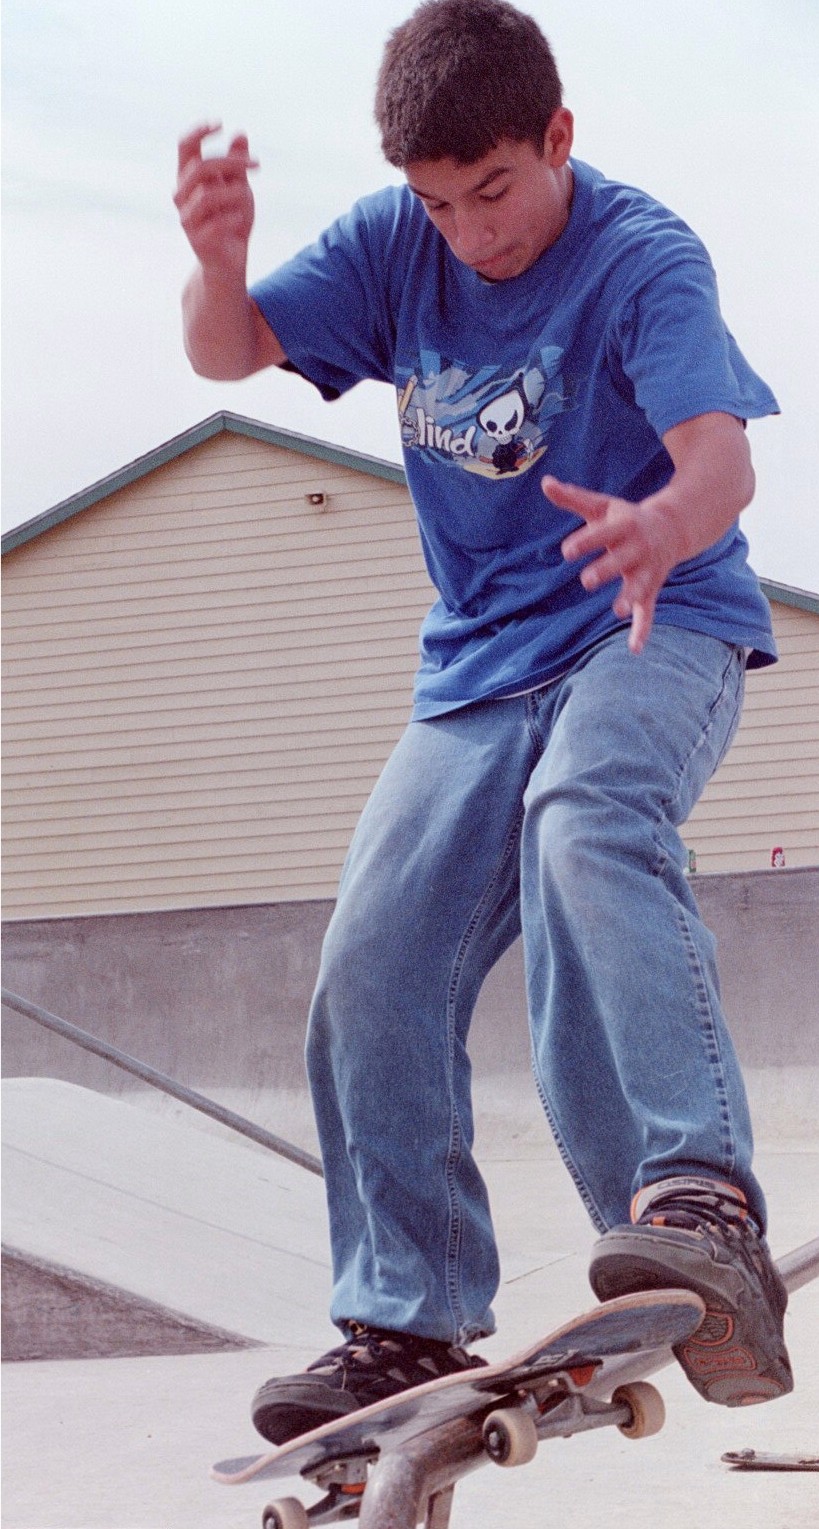 male skateboarder; Actual size=240 pixels wide